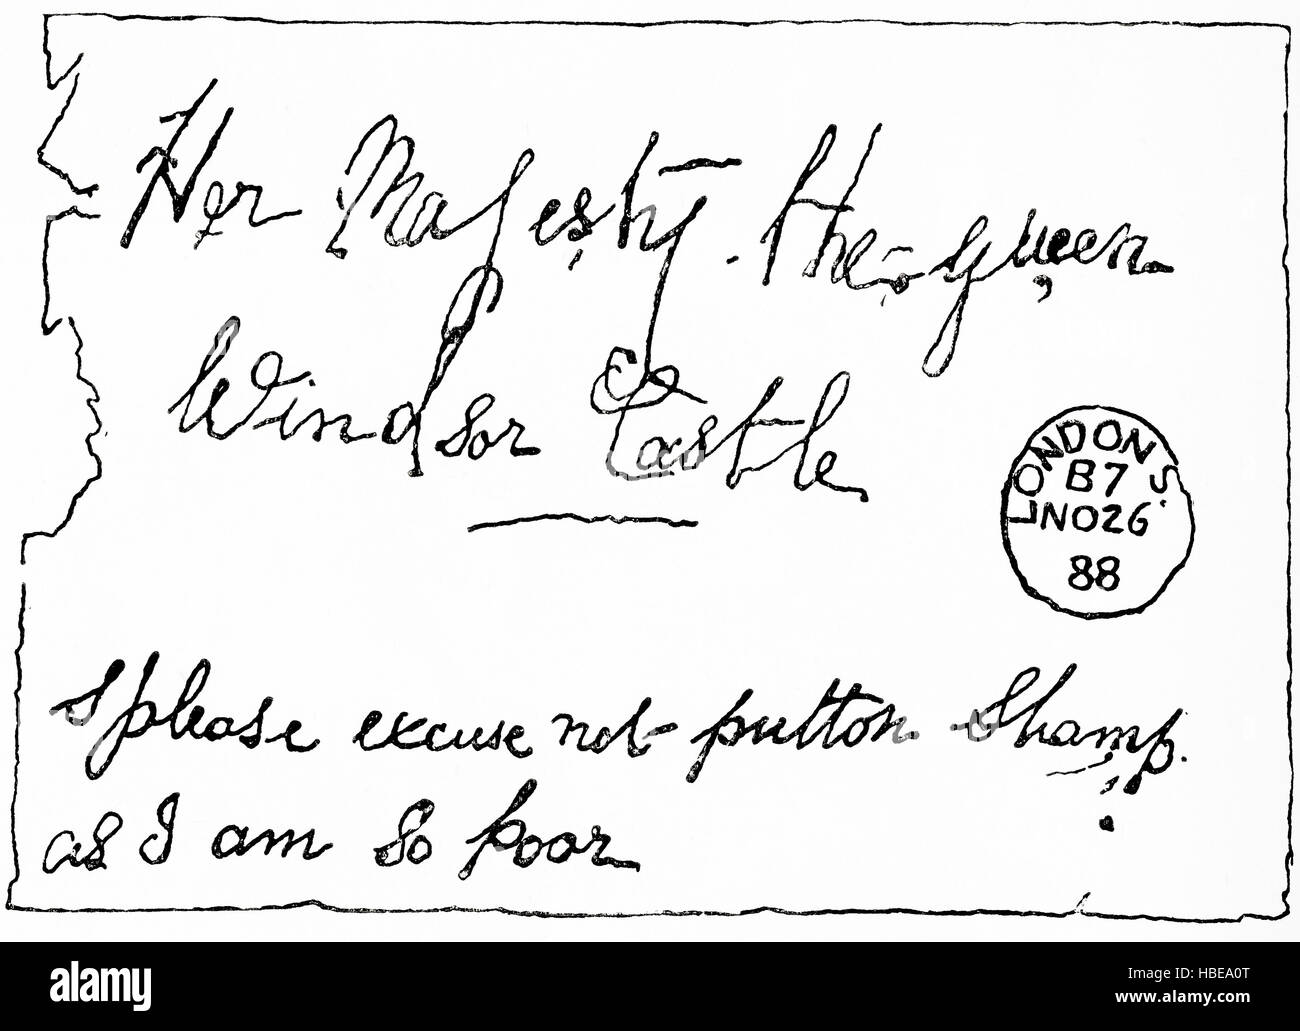 Ein Briefumschlag, der an Ihre Majestät die Königin, Windsor Castle, aus London 1888 gerichtet ist, mit den Worten: 'Bitte entschuldigen Sie nicht den Briefmarke, da ich so arm bin'. Vom Strand Magazine, Vol. I Januar bis Juni 1891. Stockfoto